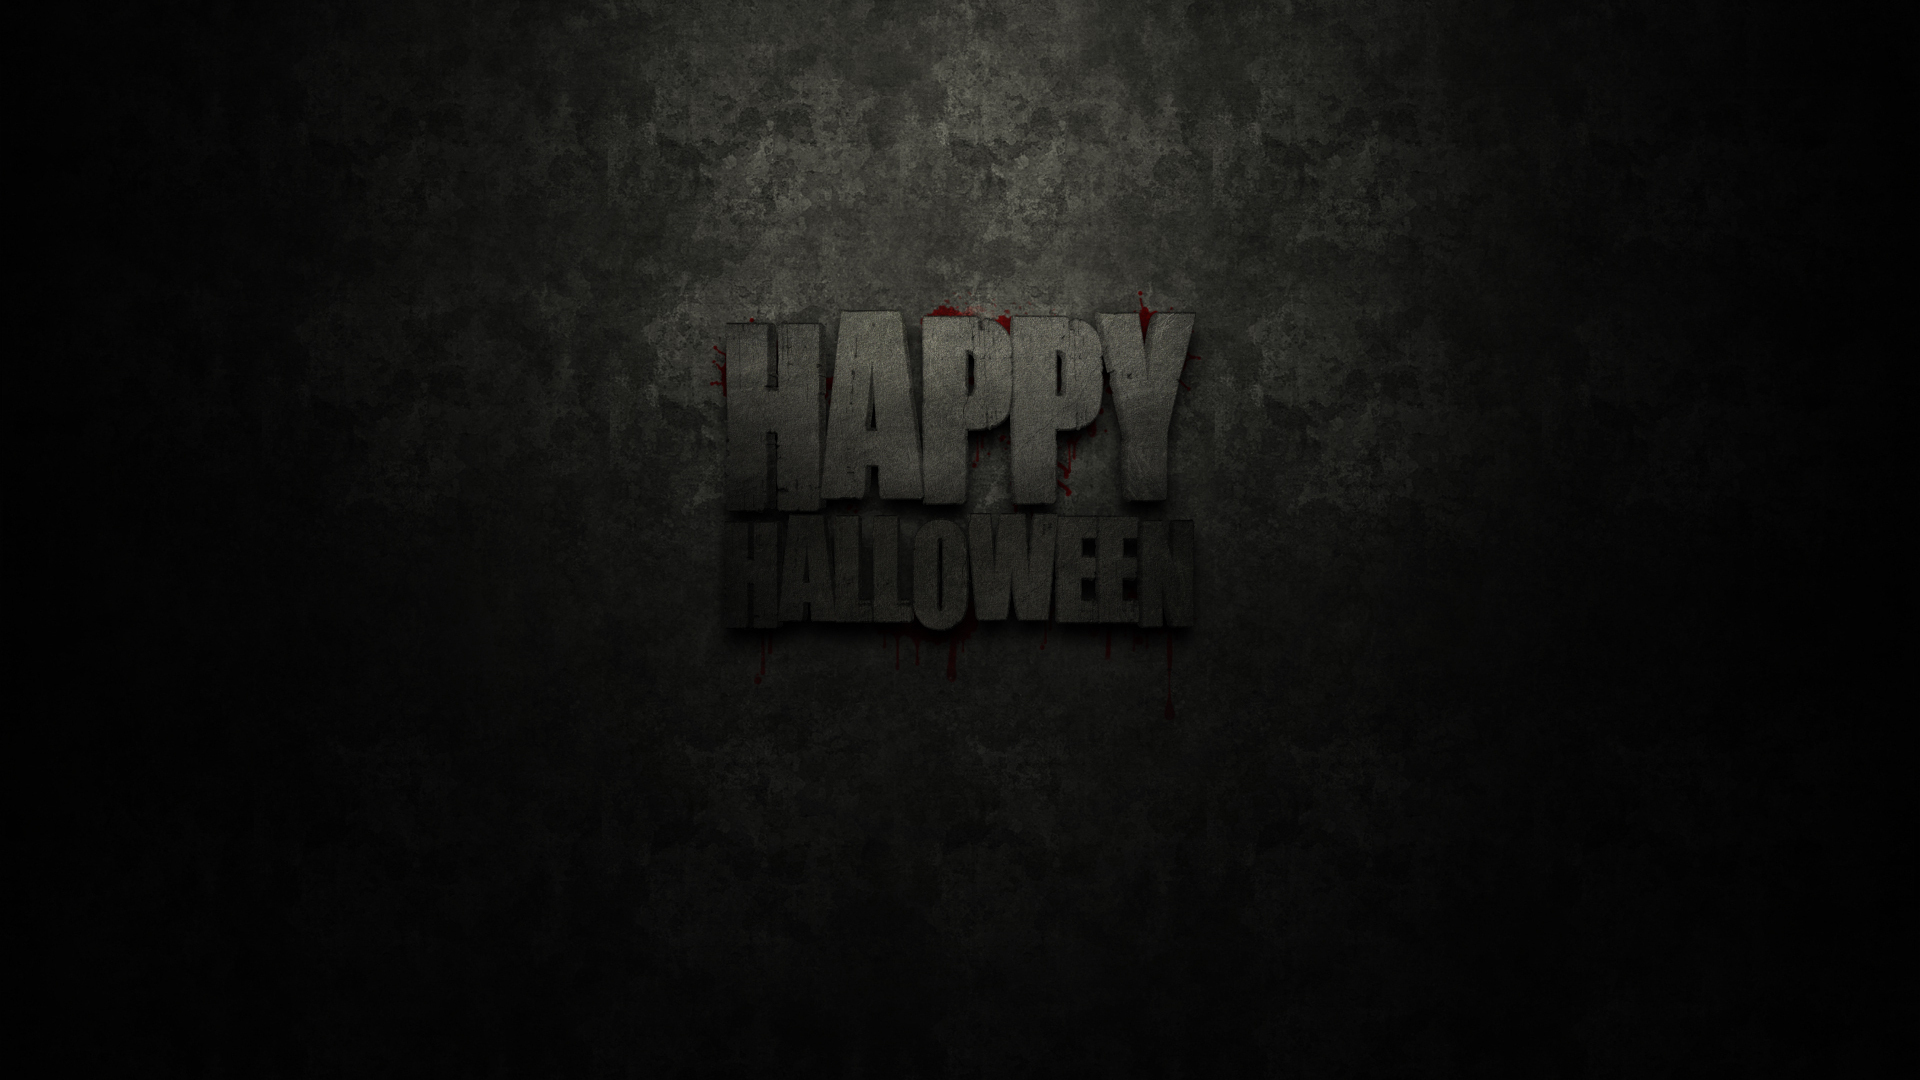 happy-halloween-heluin-lettering-texture-background-dark-hilarious